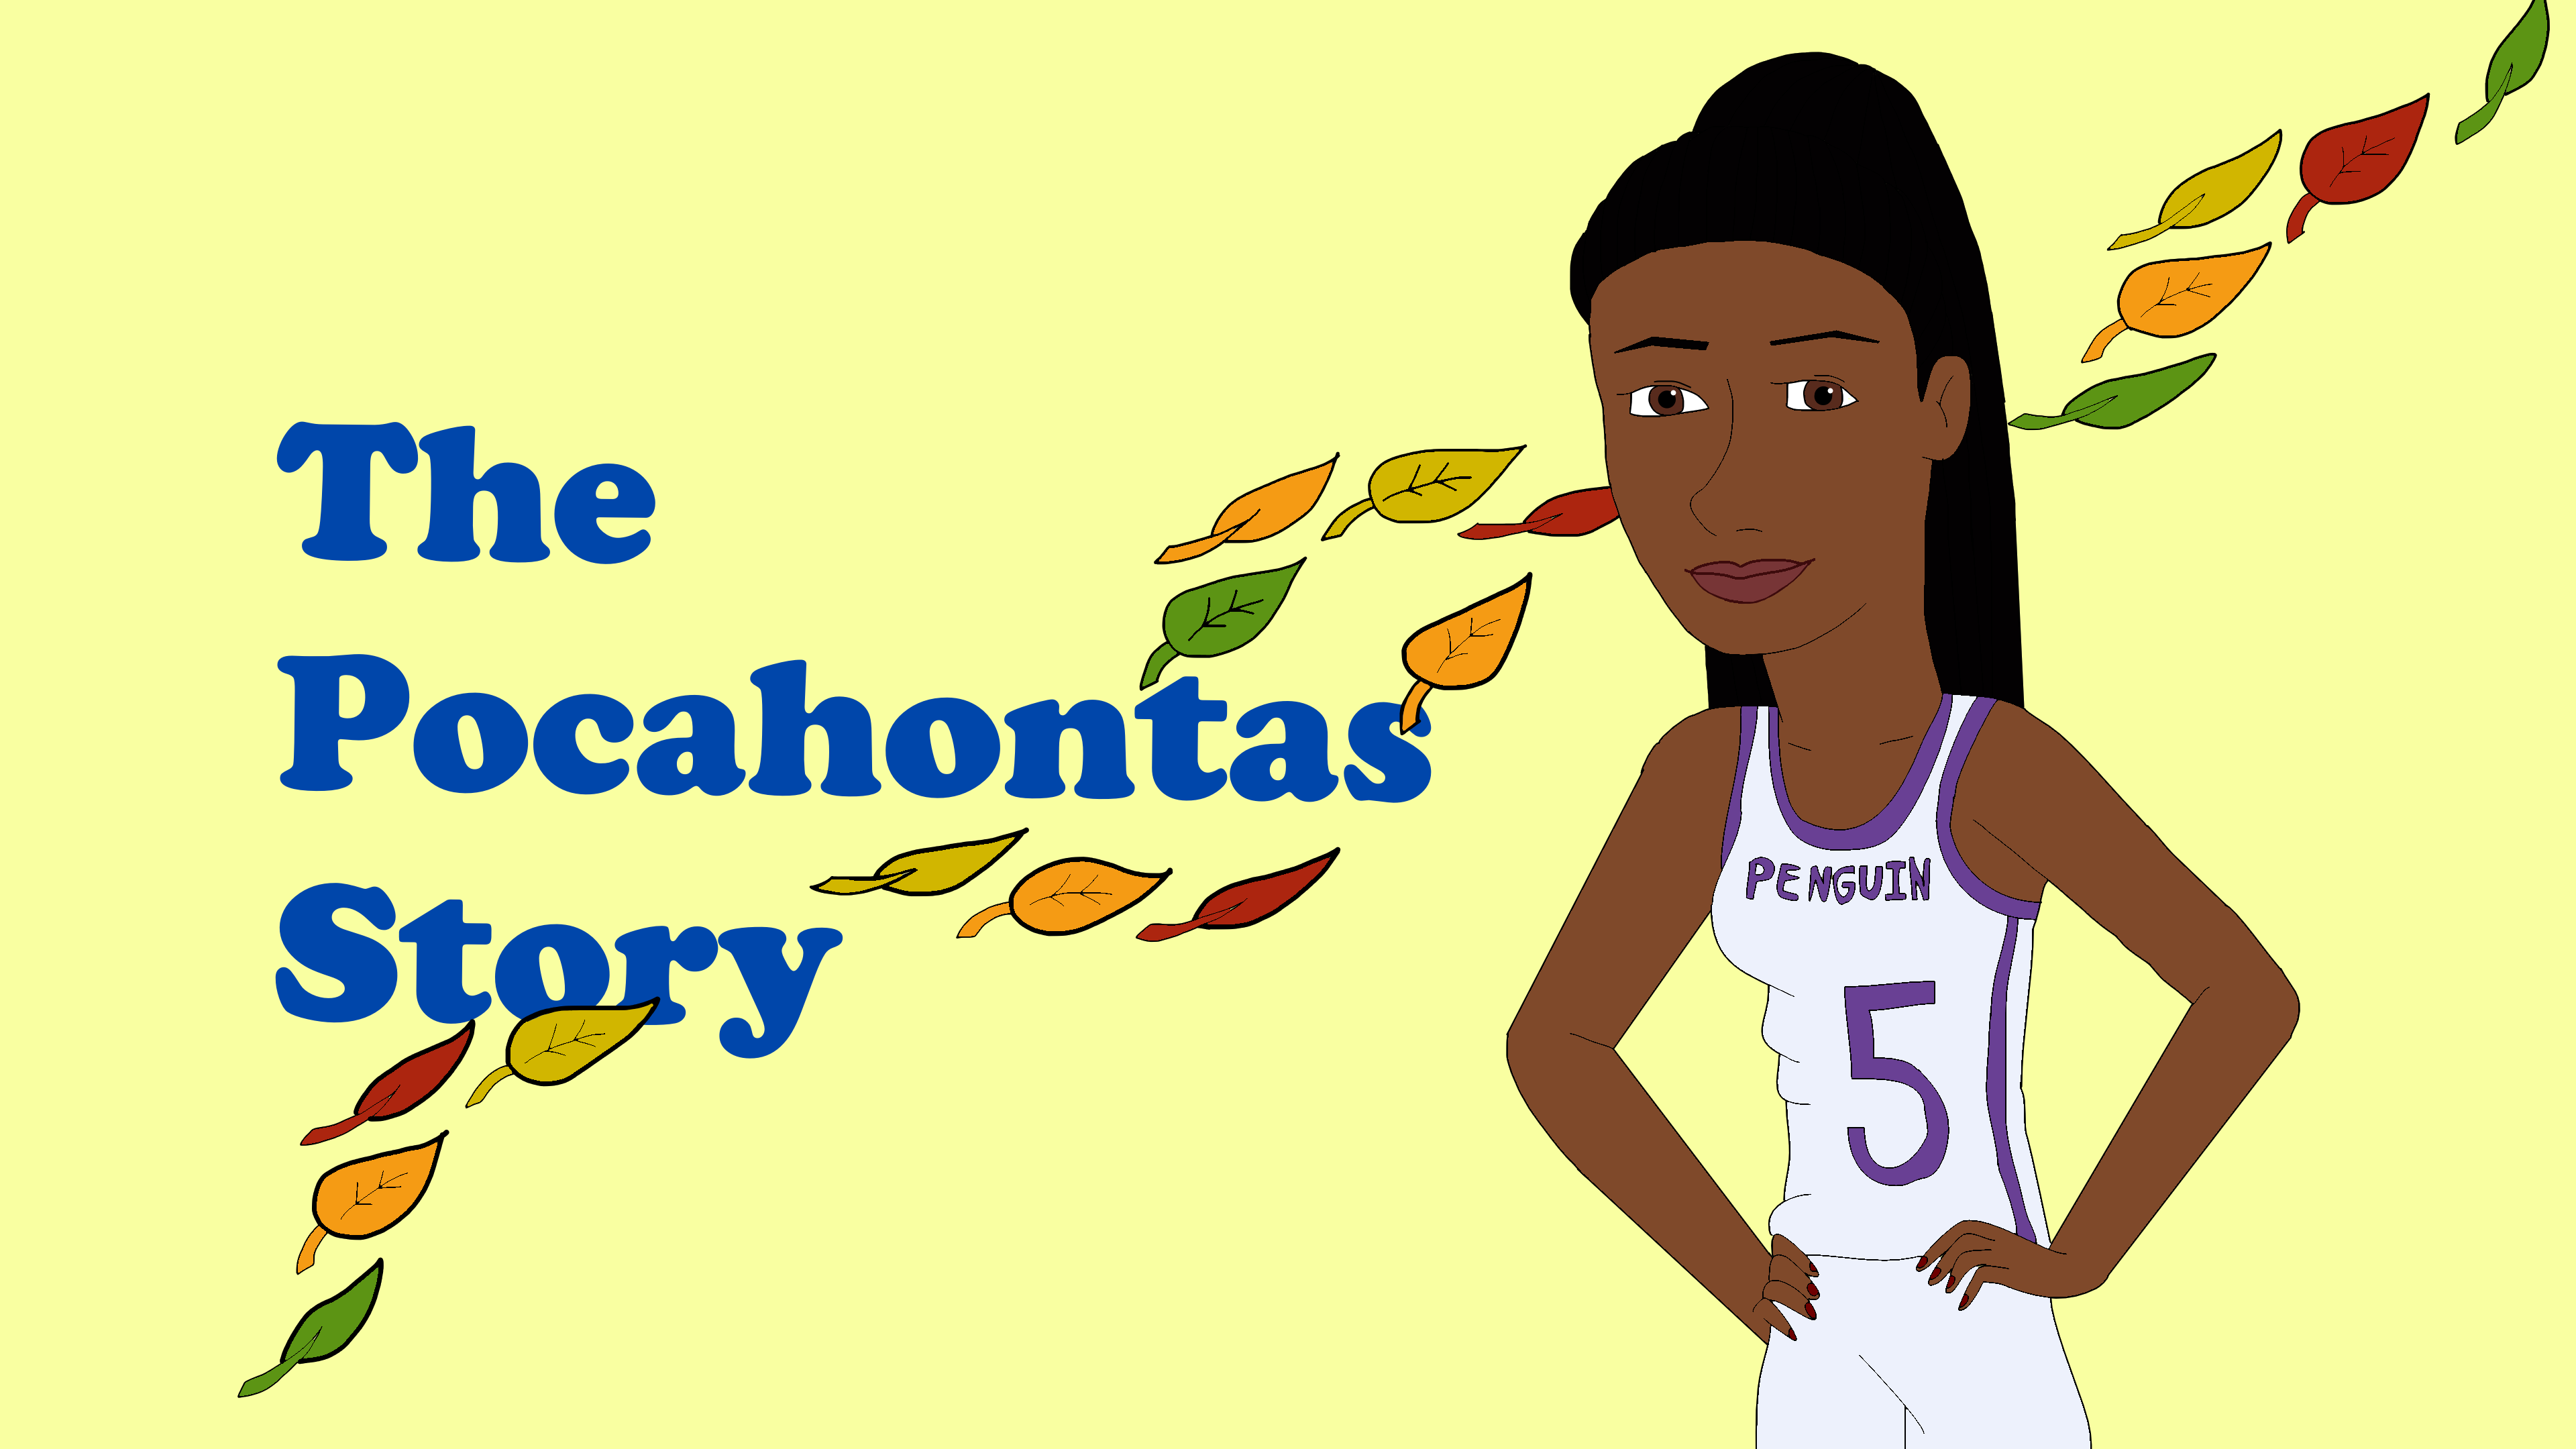 The Pocahontas Story